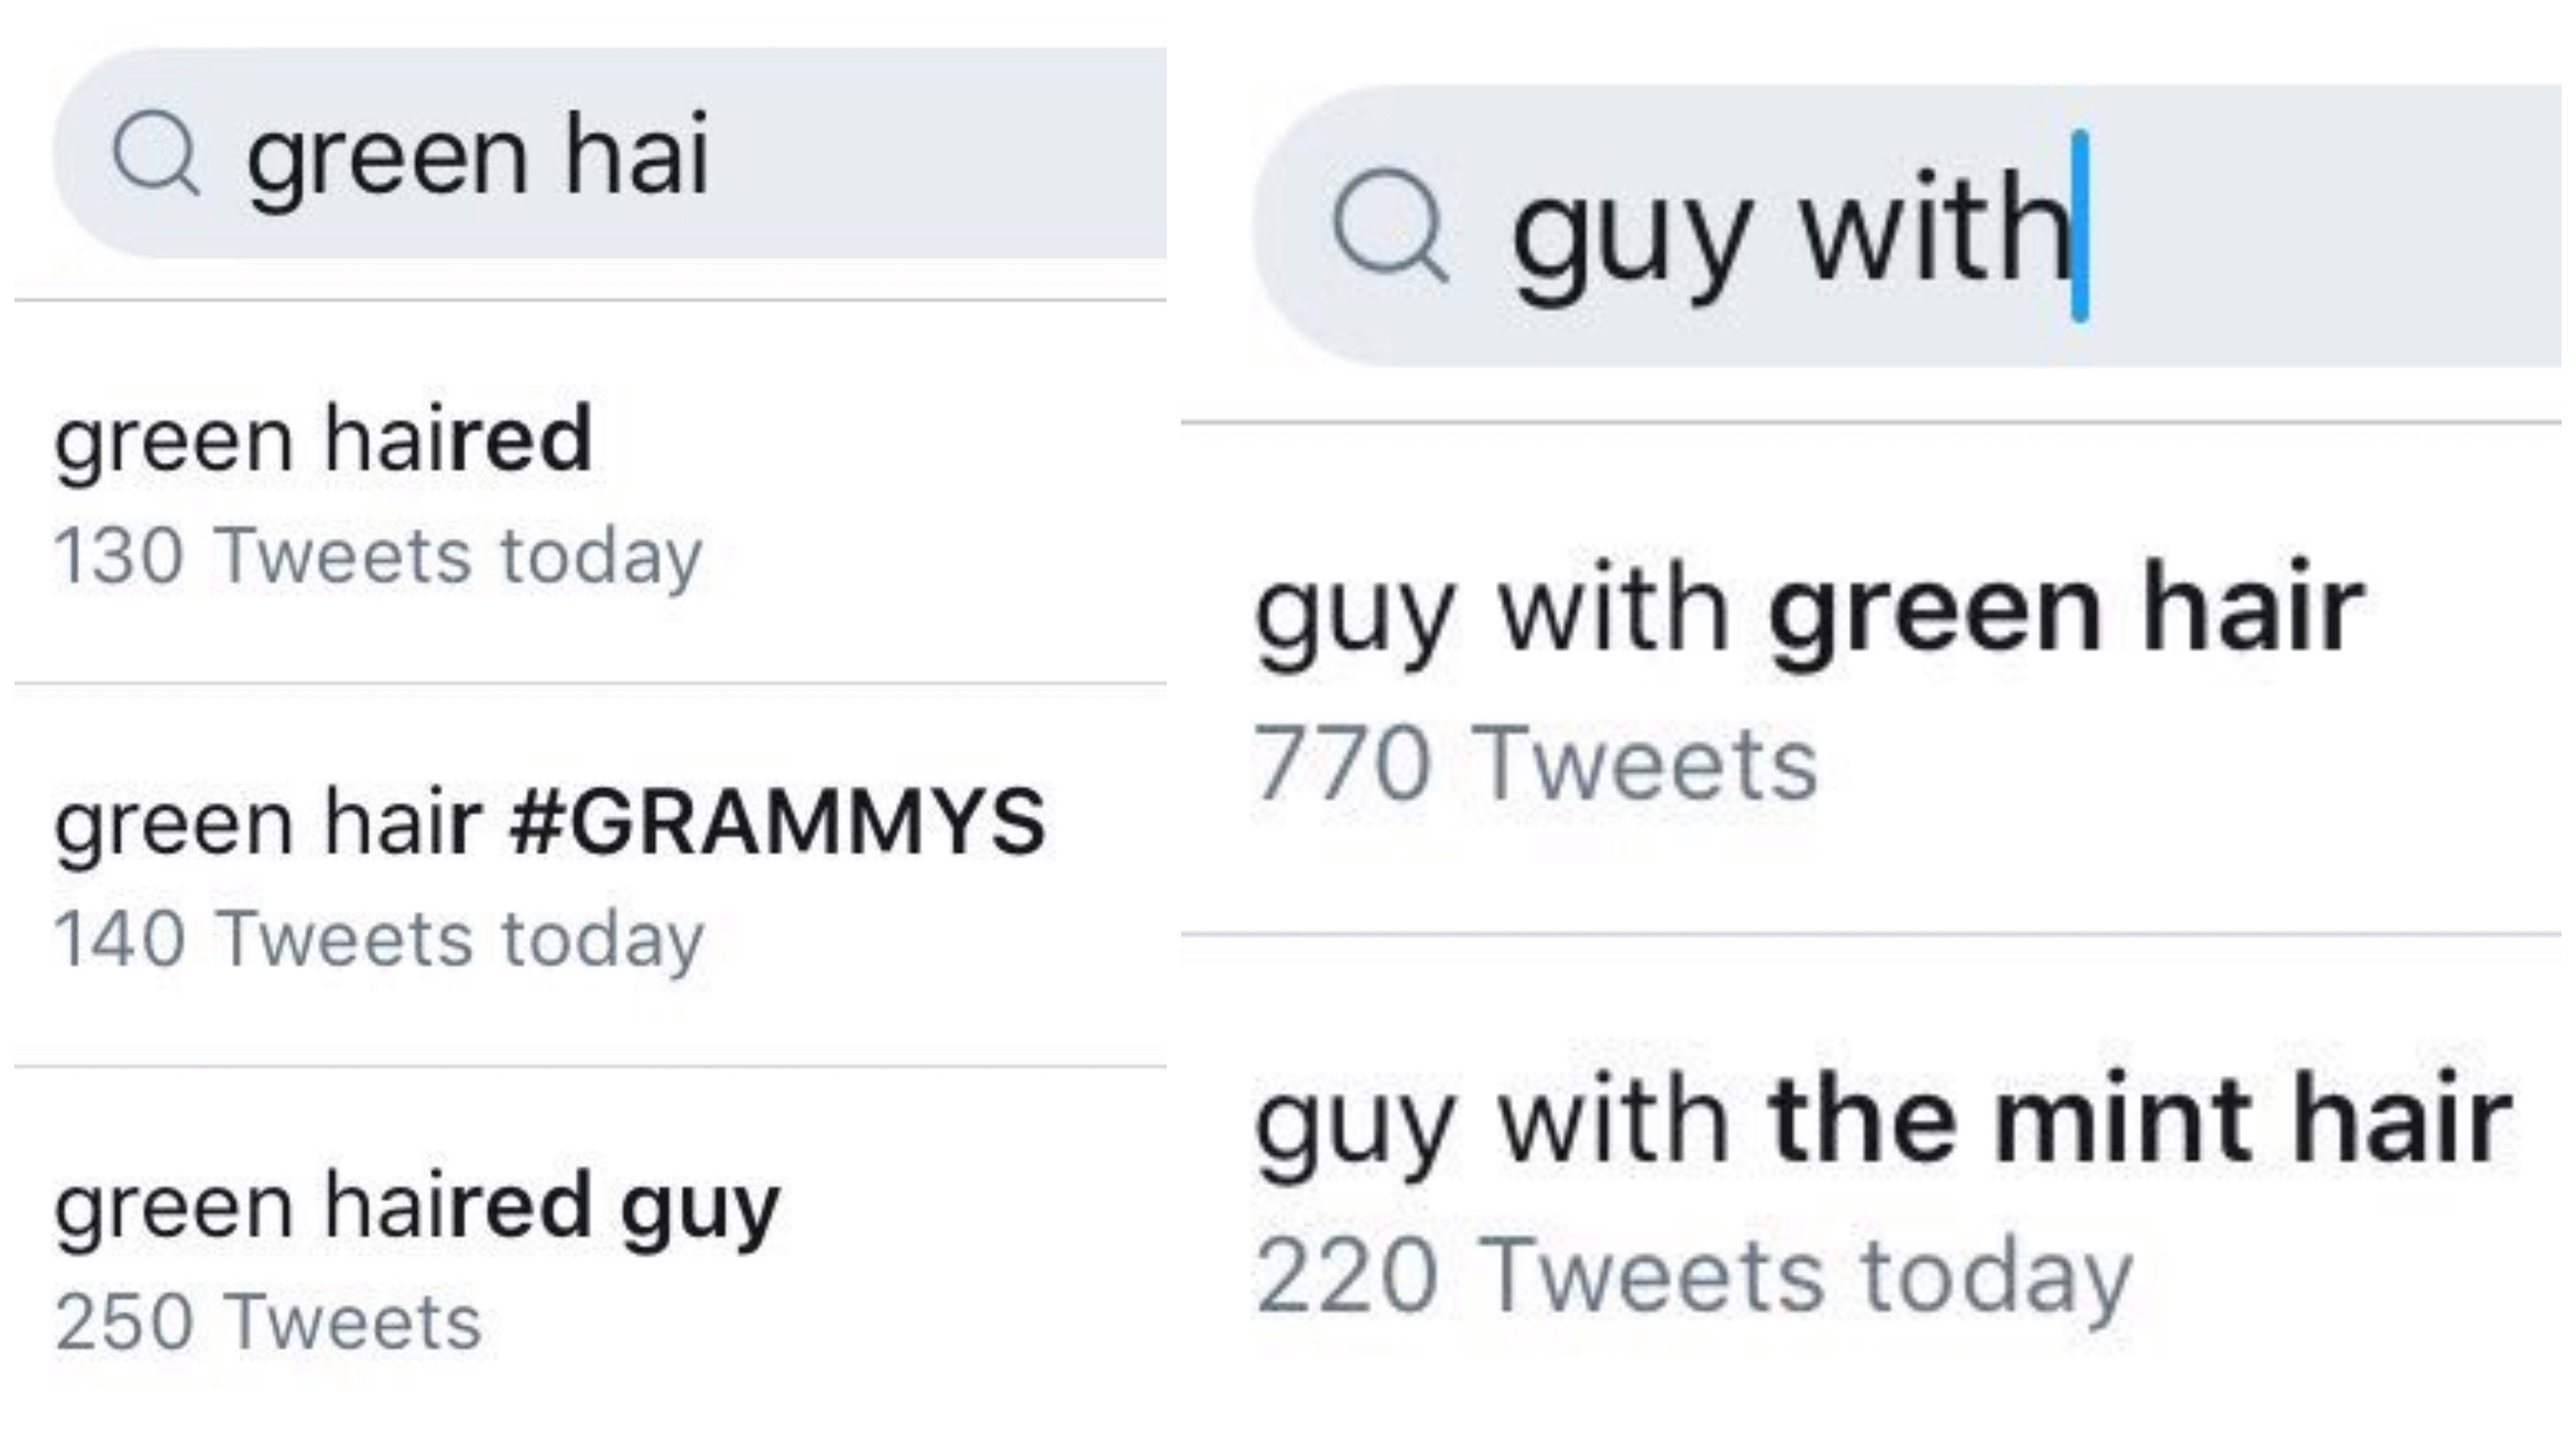 "The guy with grenn hair" xuất hiện khắp nơi trên Twitter (Ảnh: Twitter)